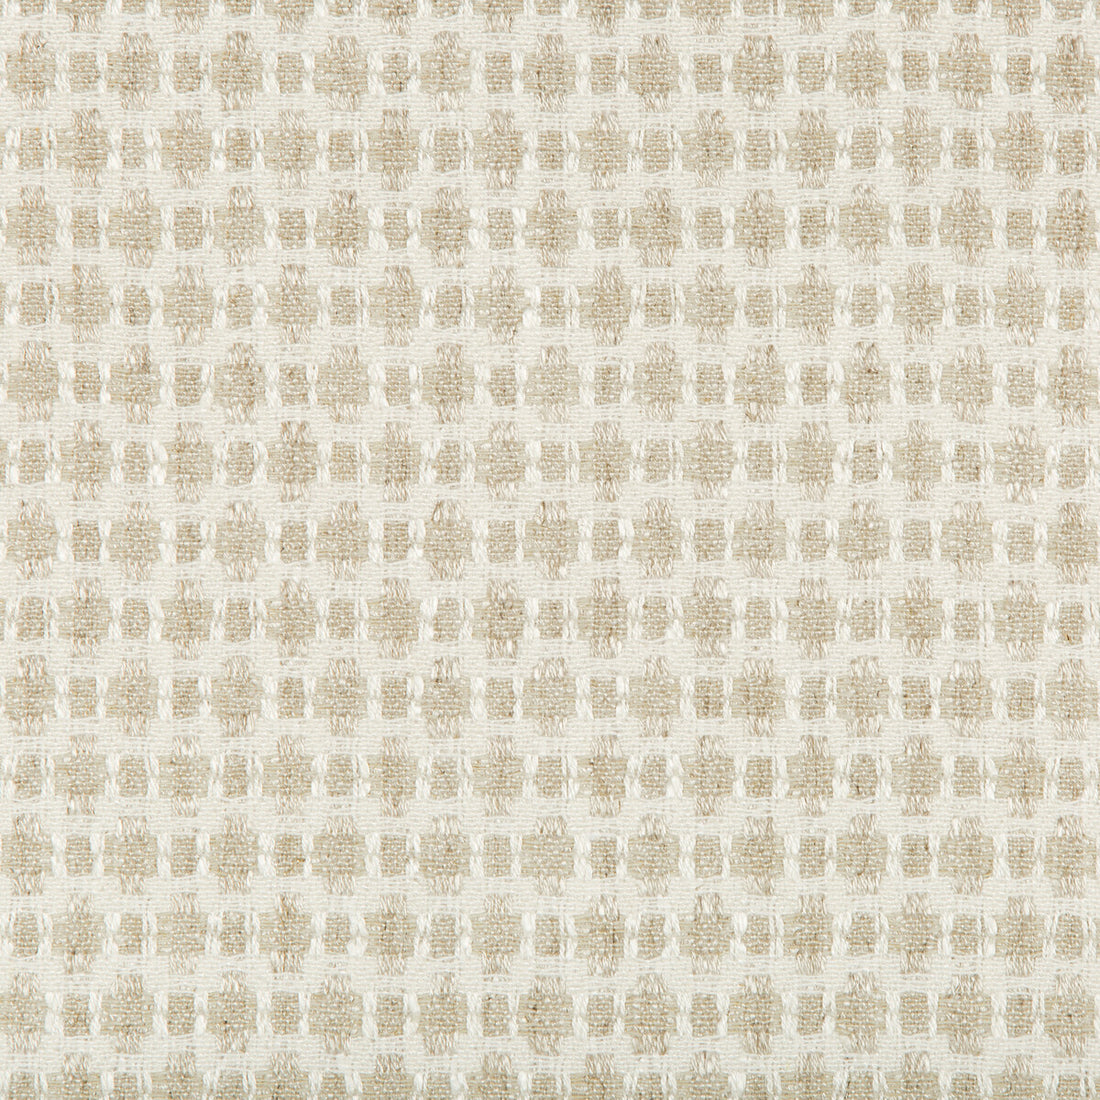 Kravet Design fabric in 35622-16 color - pattern 35622.16.0 - by Kravet Design